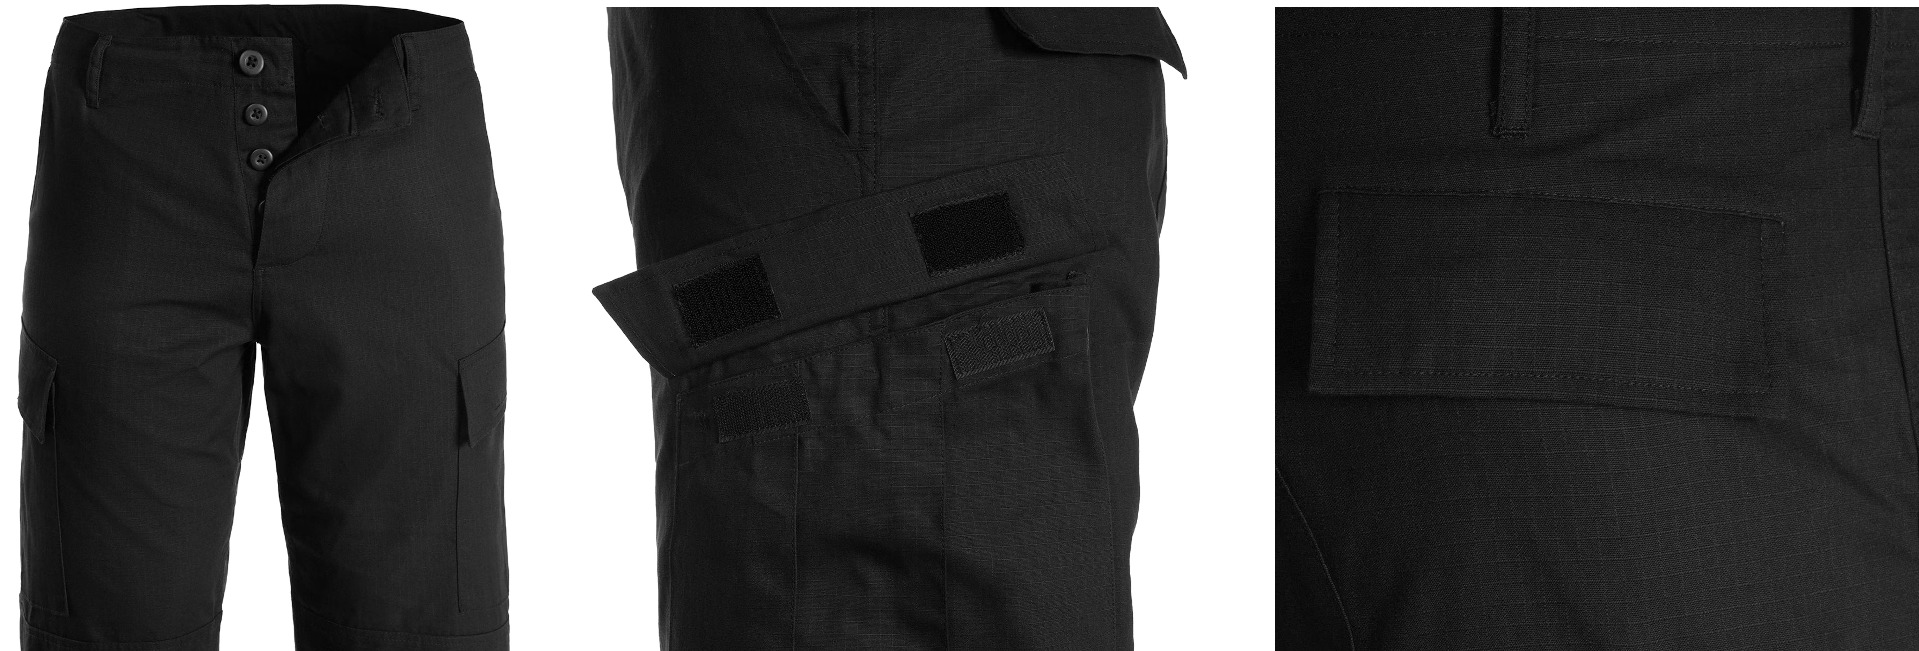 Pridobite svoj par US vojaških hlač US Black - vrhunske taktične hlače za udobje, vzdržljivost in funkcionalnost. Primerno za vojaške operacije, pohodništvo, lov in varnostne sile. Opremite se s kakovostnim vojaškim oblačilom!